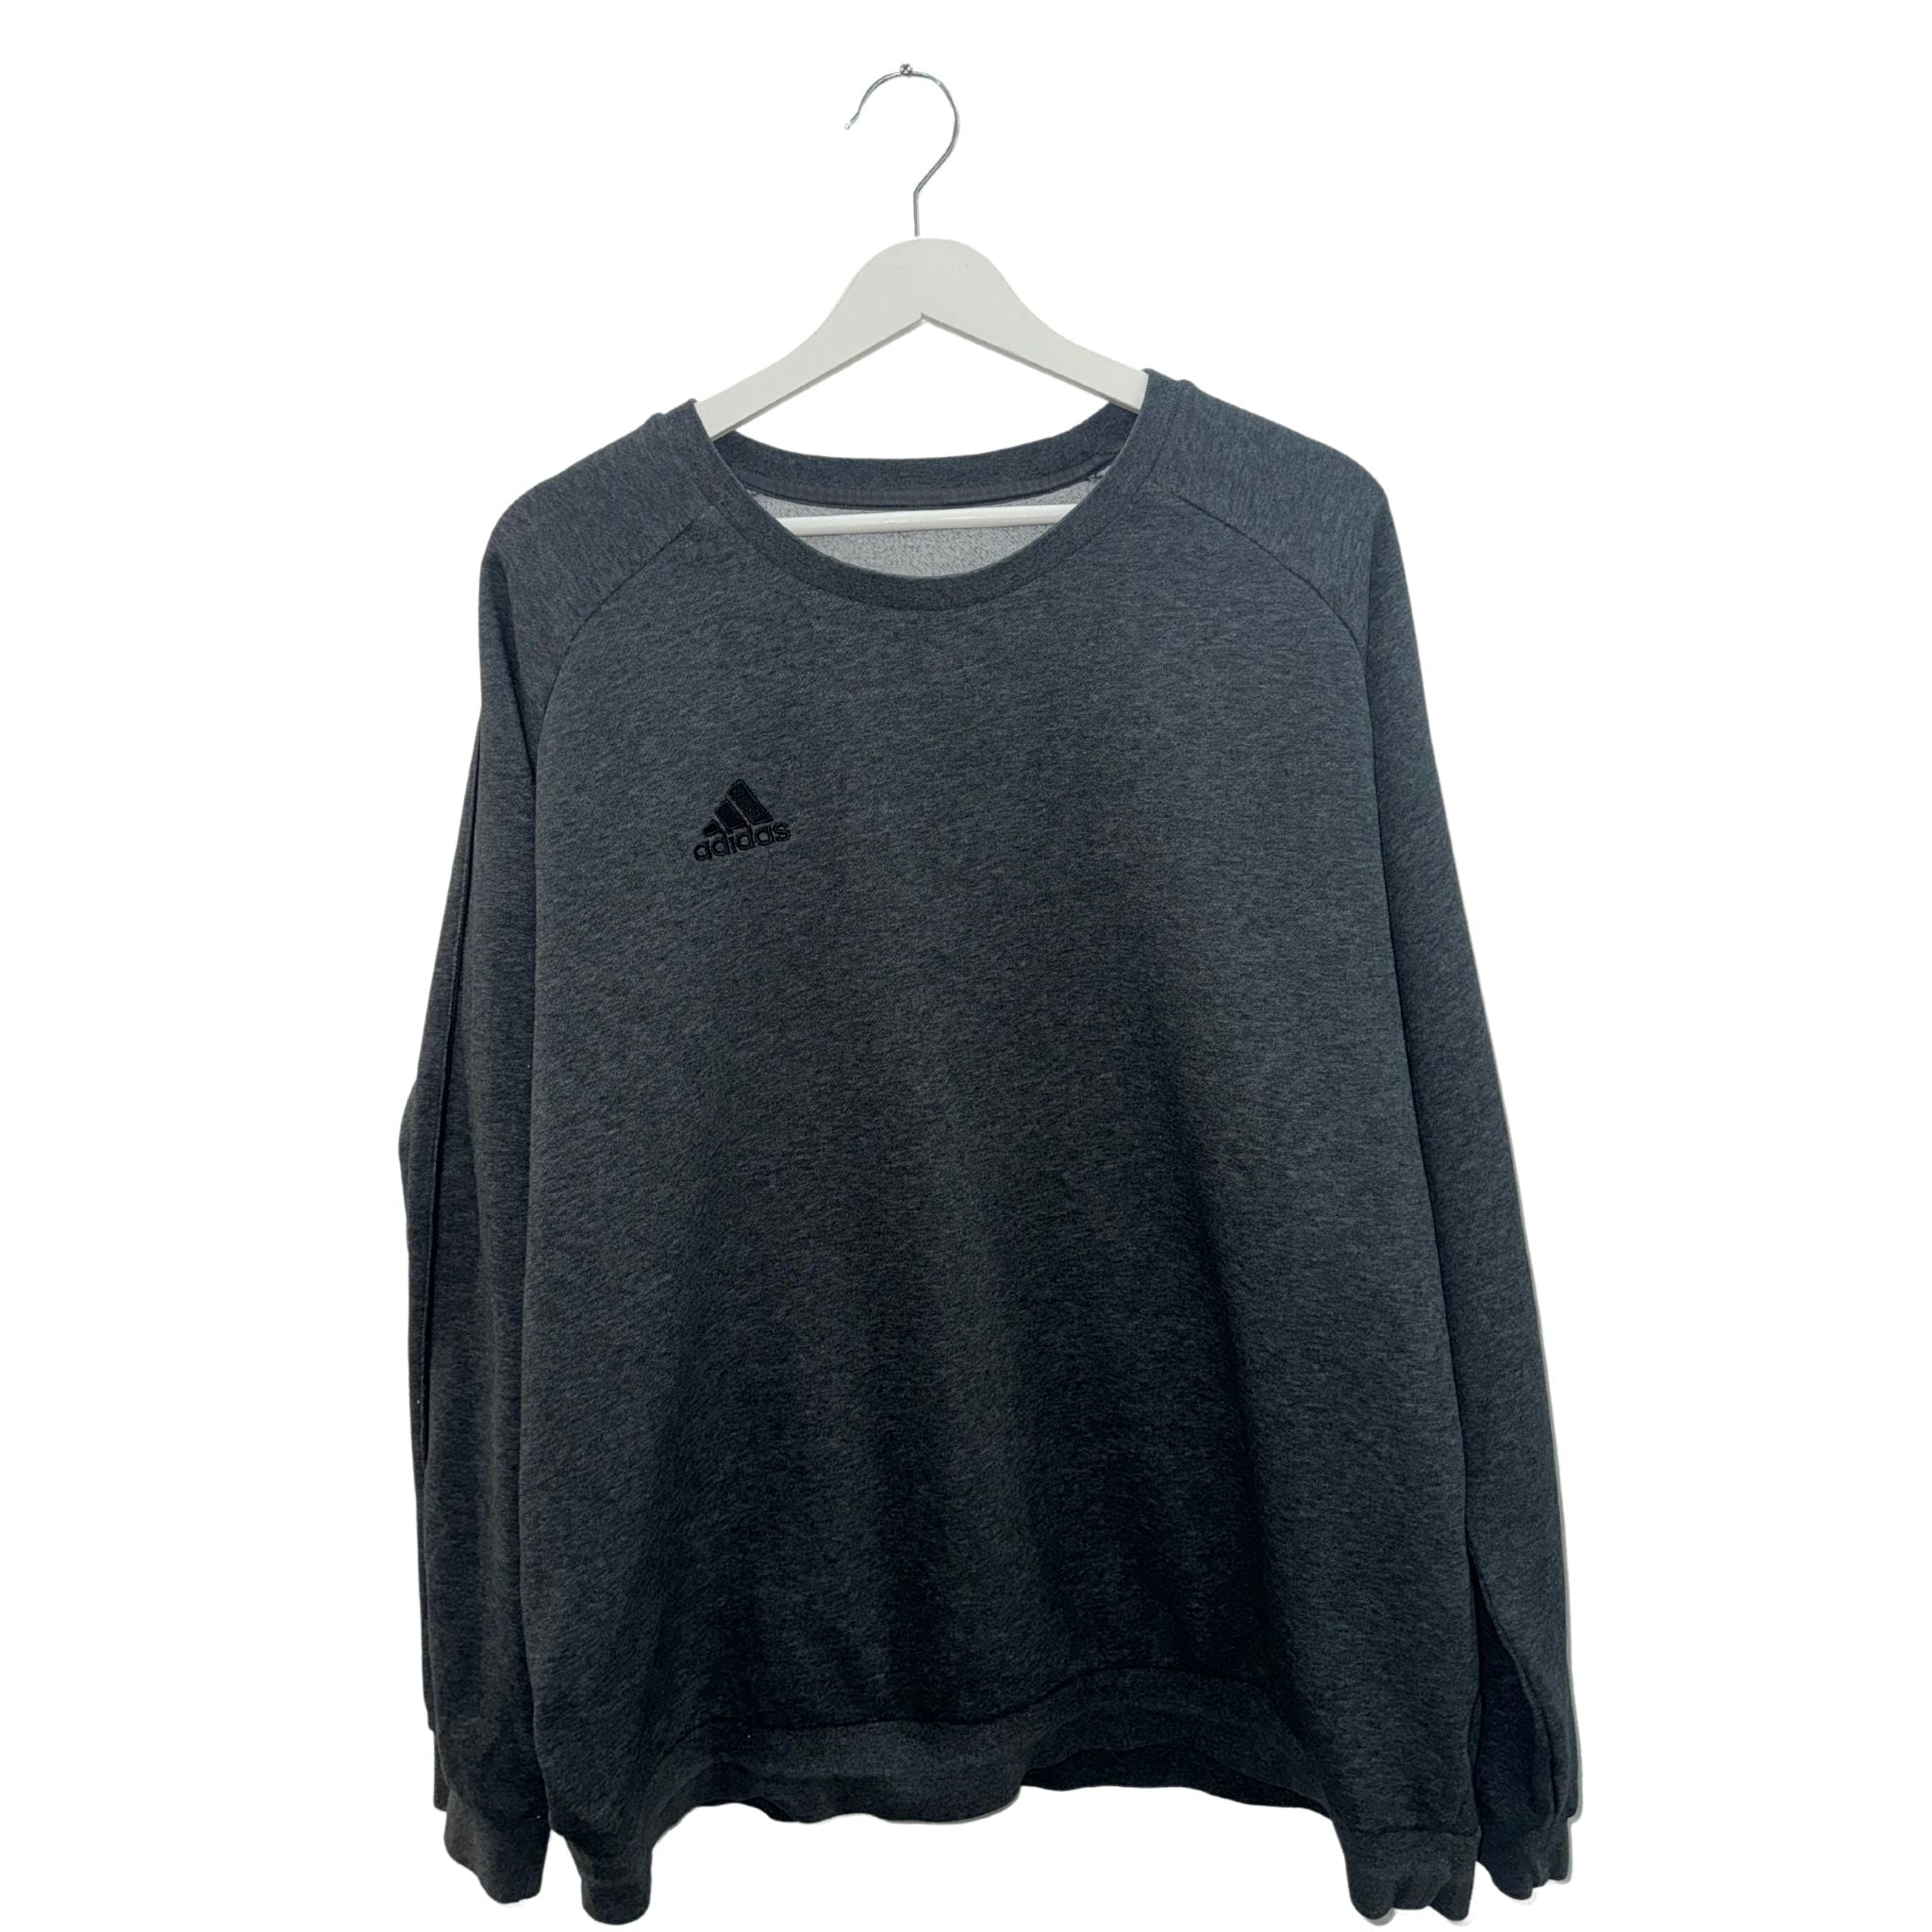 Adidas Sweater Grau XL